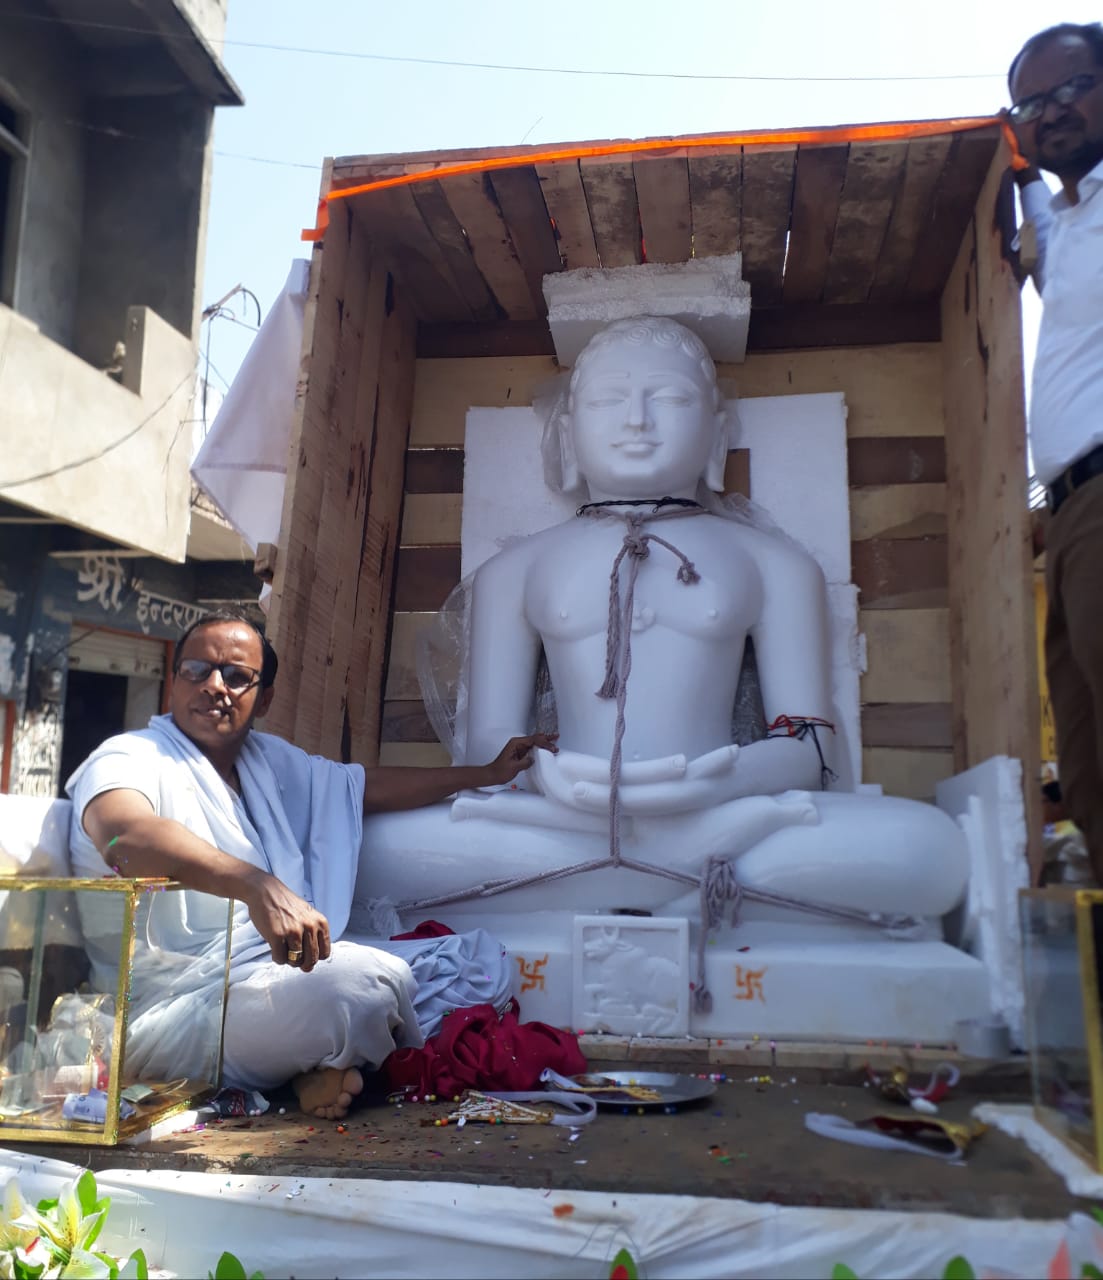 भगवान आदिनाथ की विशाल प्रतिमा के साथ शोभायात्रा में उमड़े जैन समाजजन